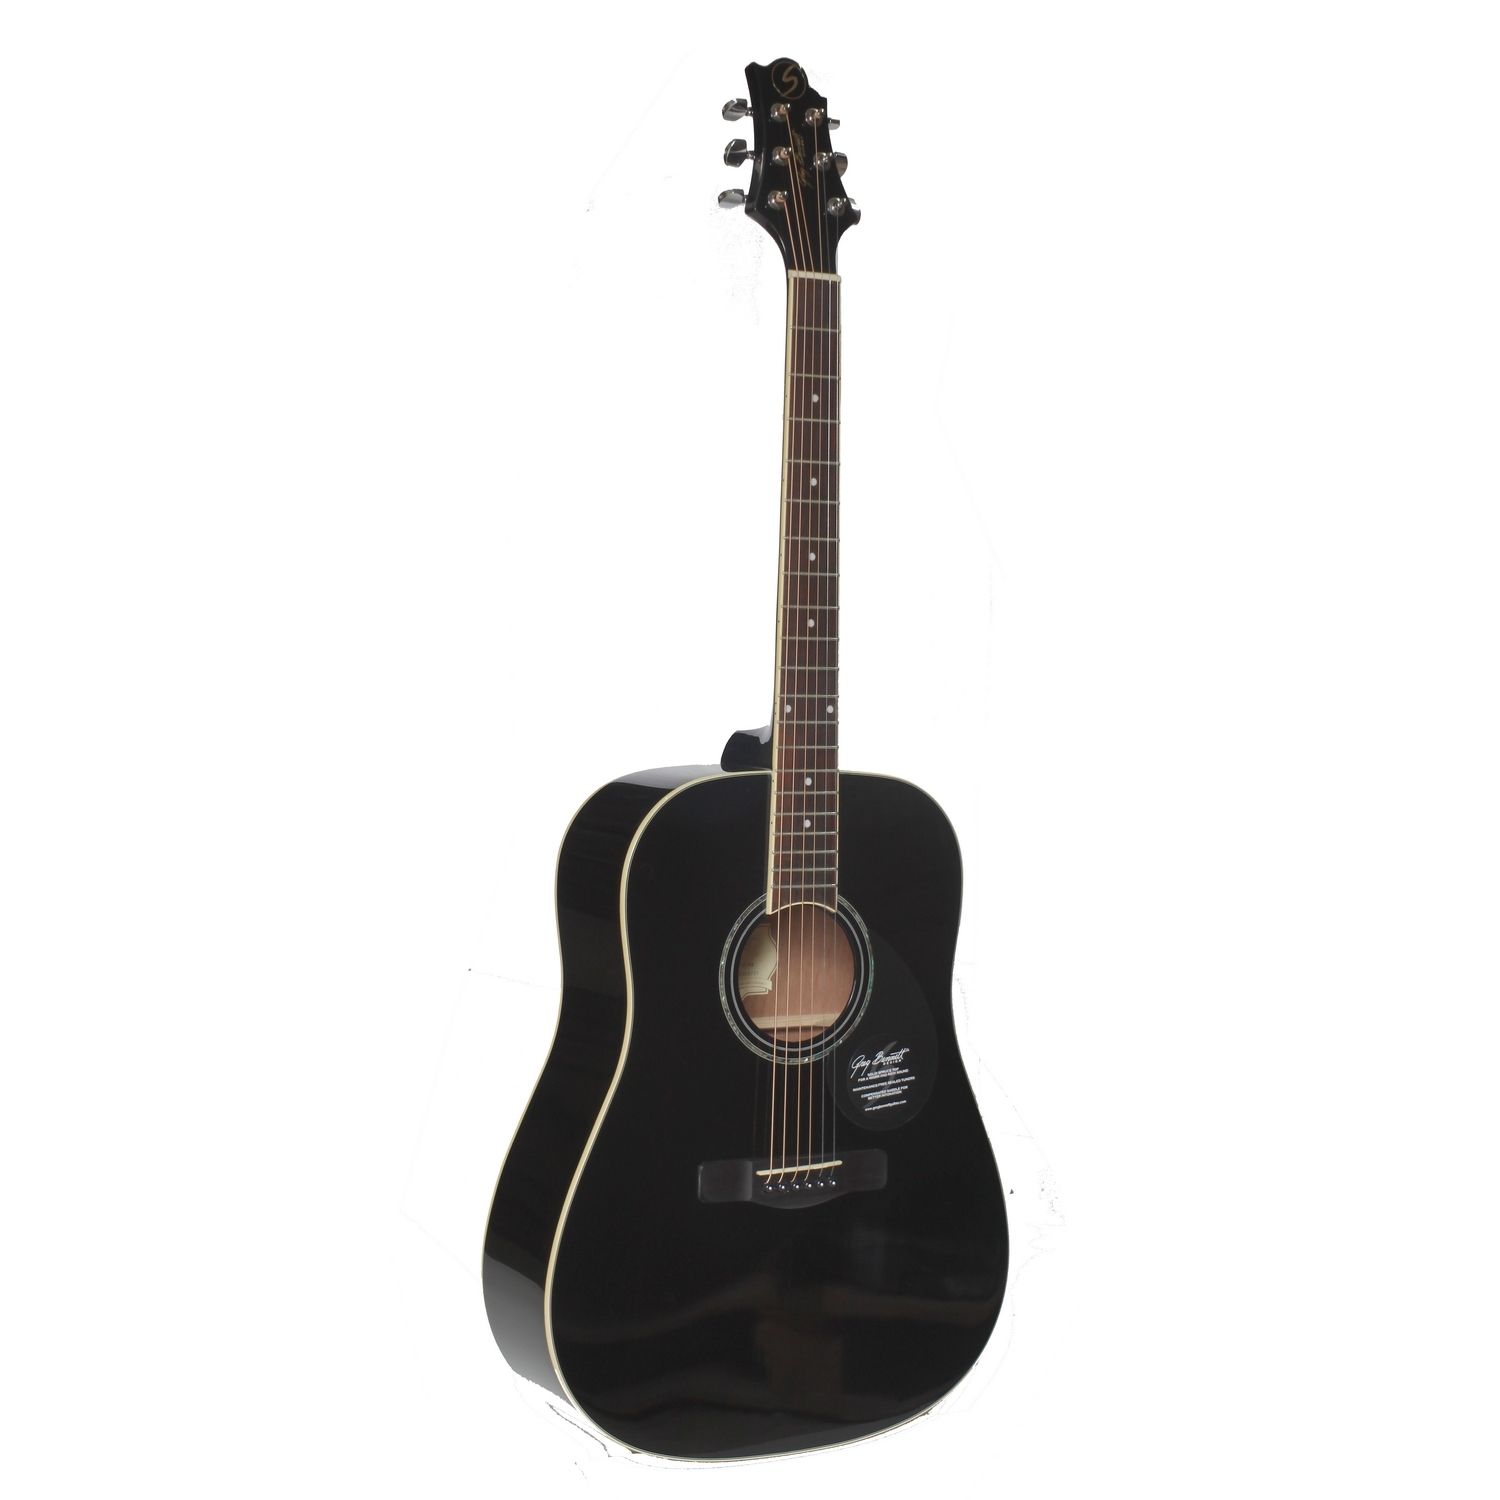 Картинка Акустическая гитара Greg Bennett GD100S/BK - лучшая цена, доставка по России